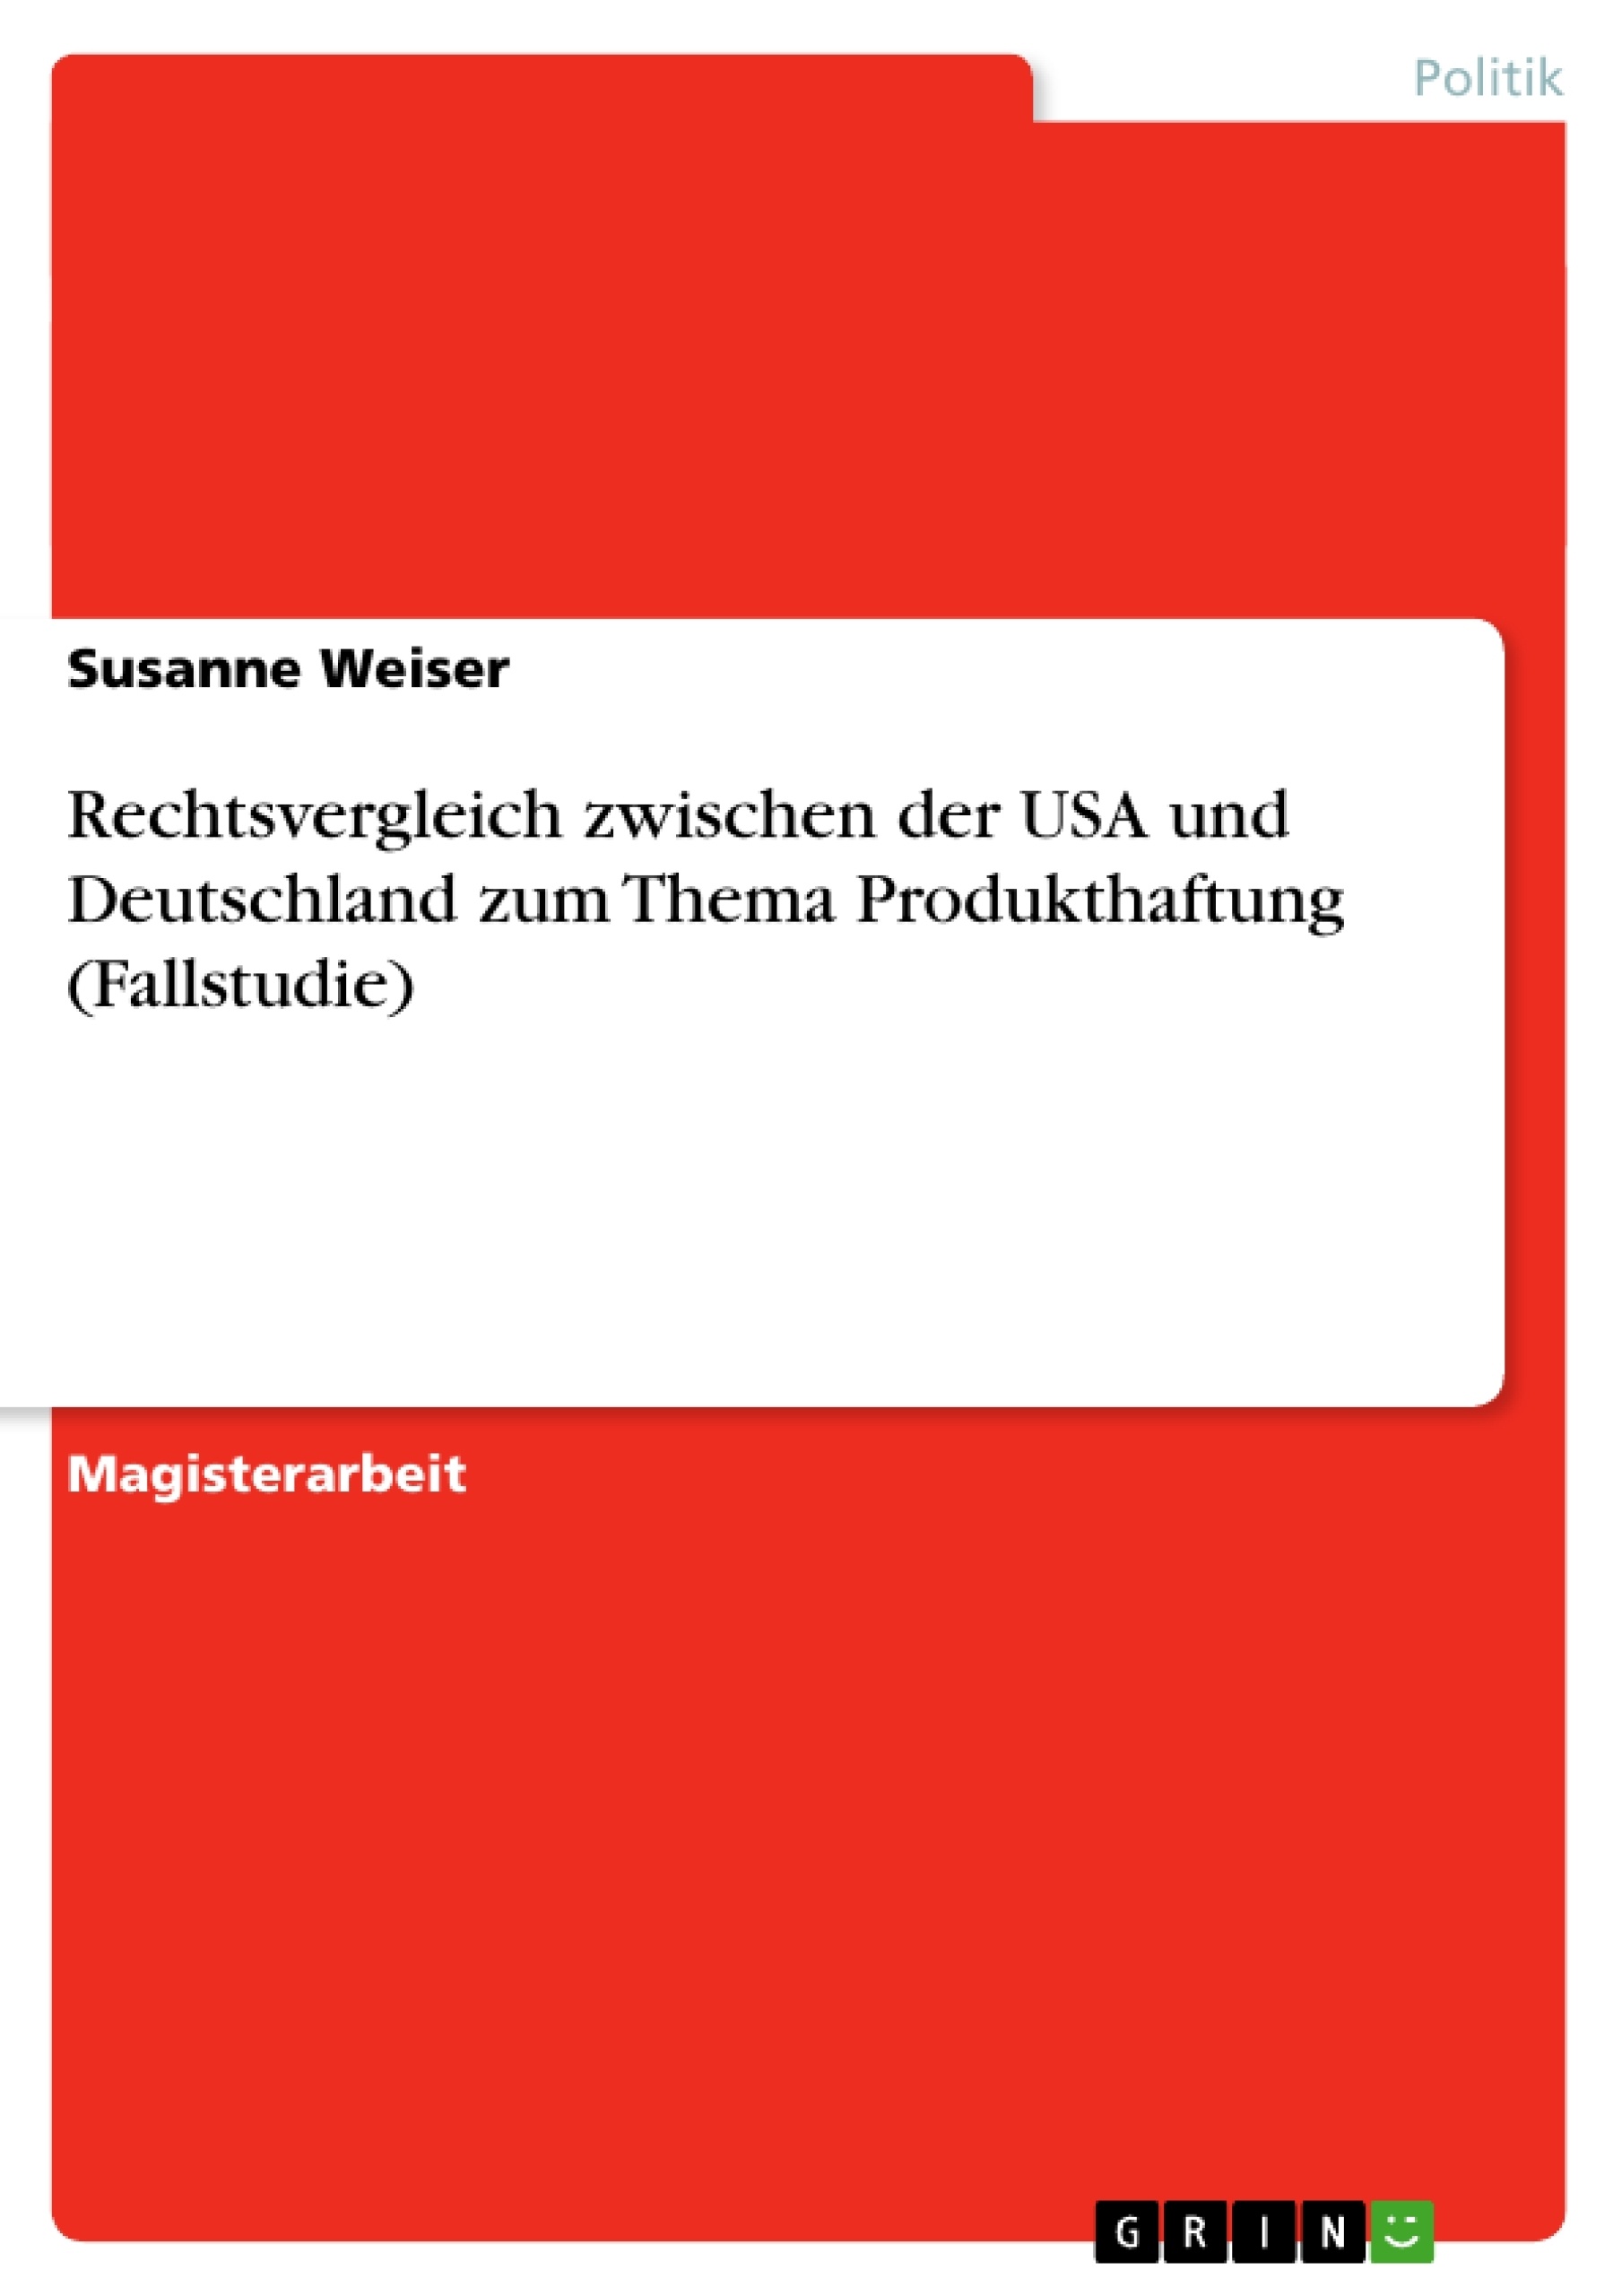 Titre: Rechtsvergleich zwischen der USA und Deutschland zum Thema Produkthaftung (Fallstudie)